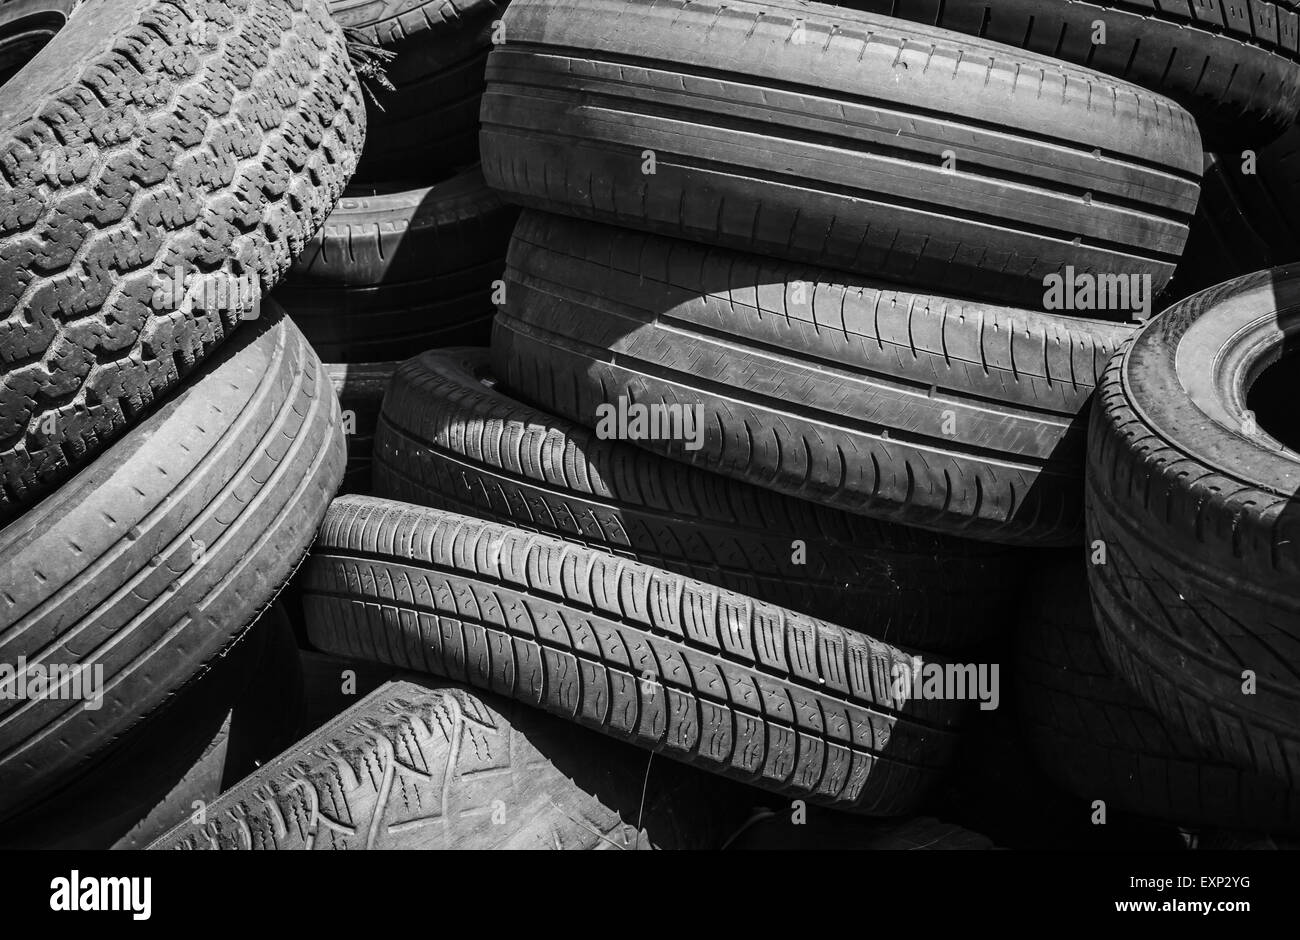 Tas de vieux pneus usés utilisés Banque D'Images